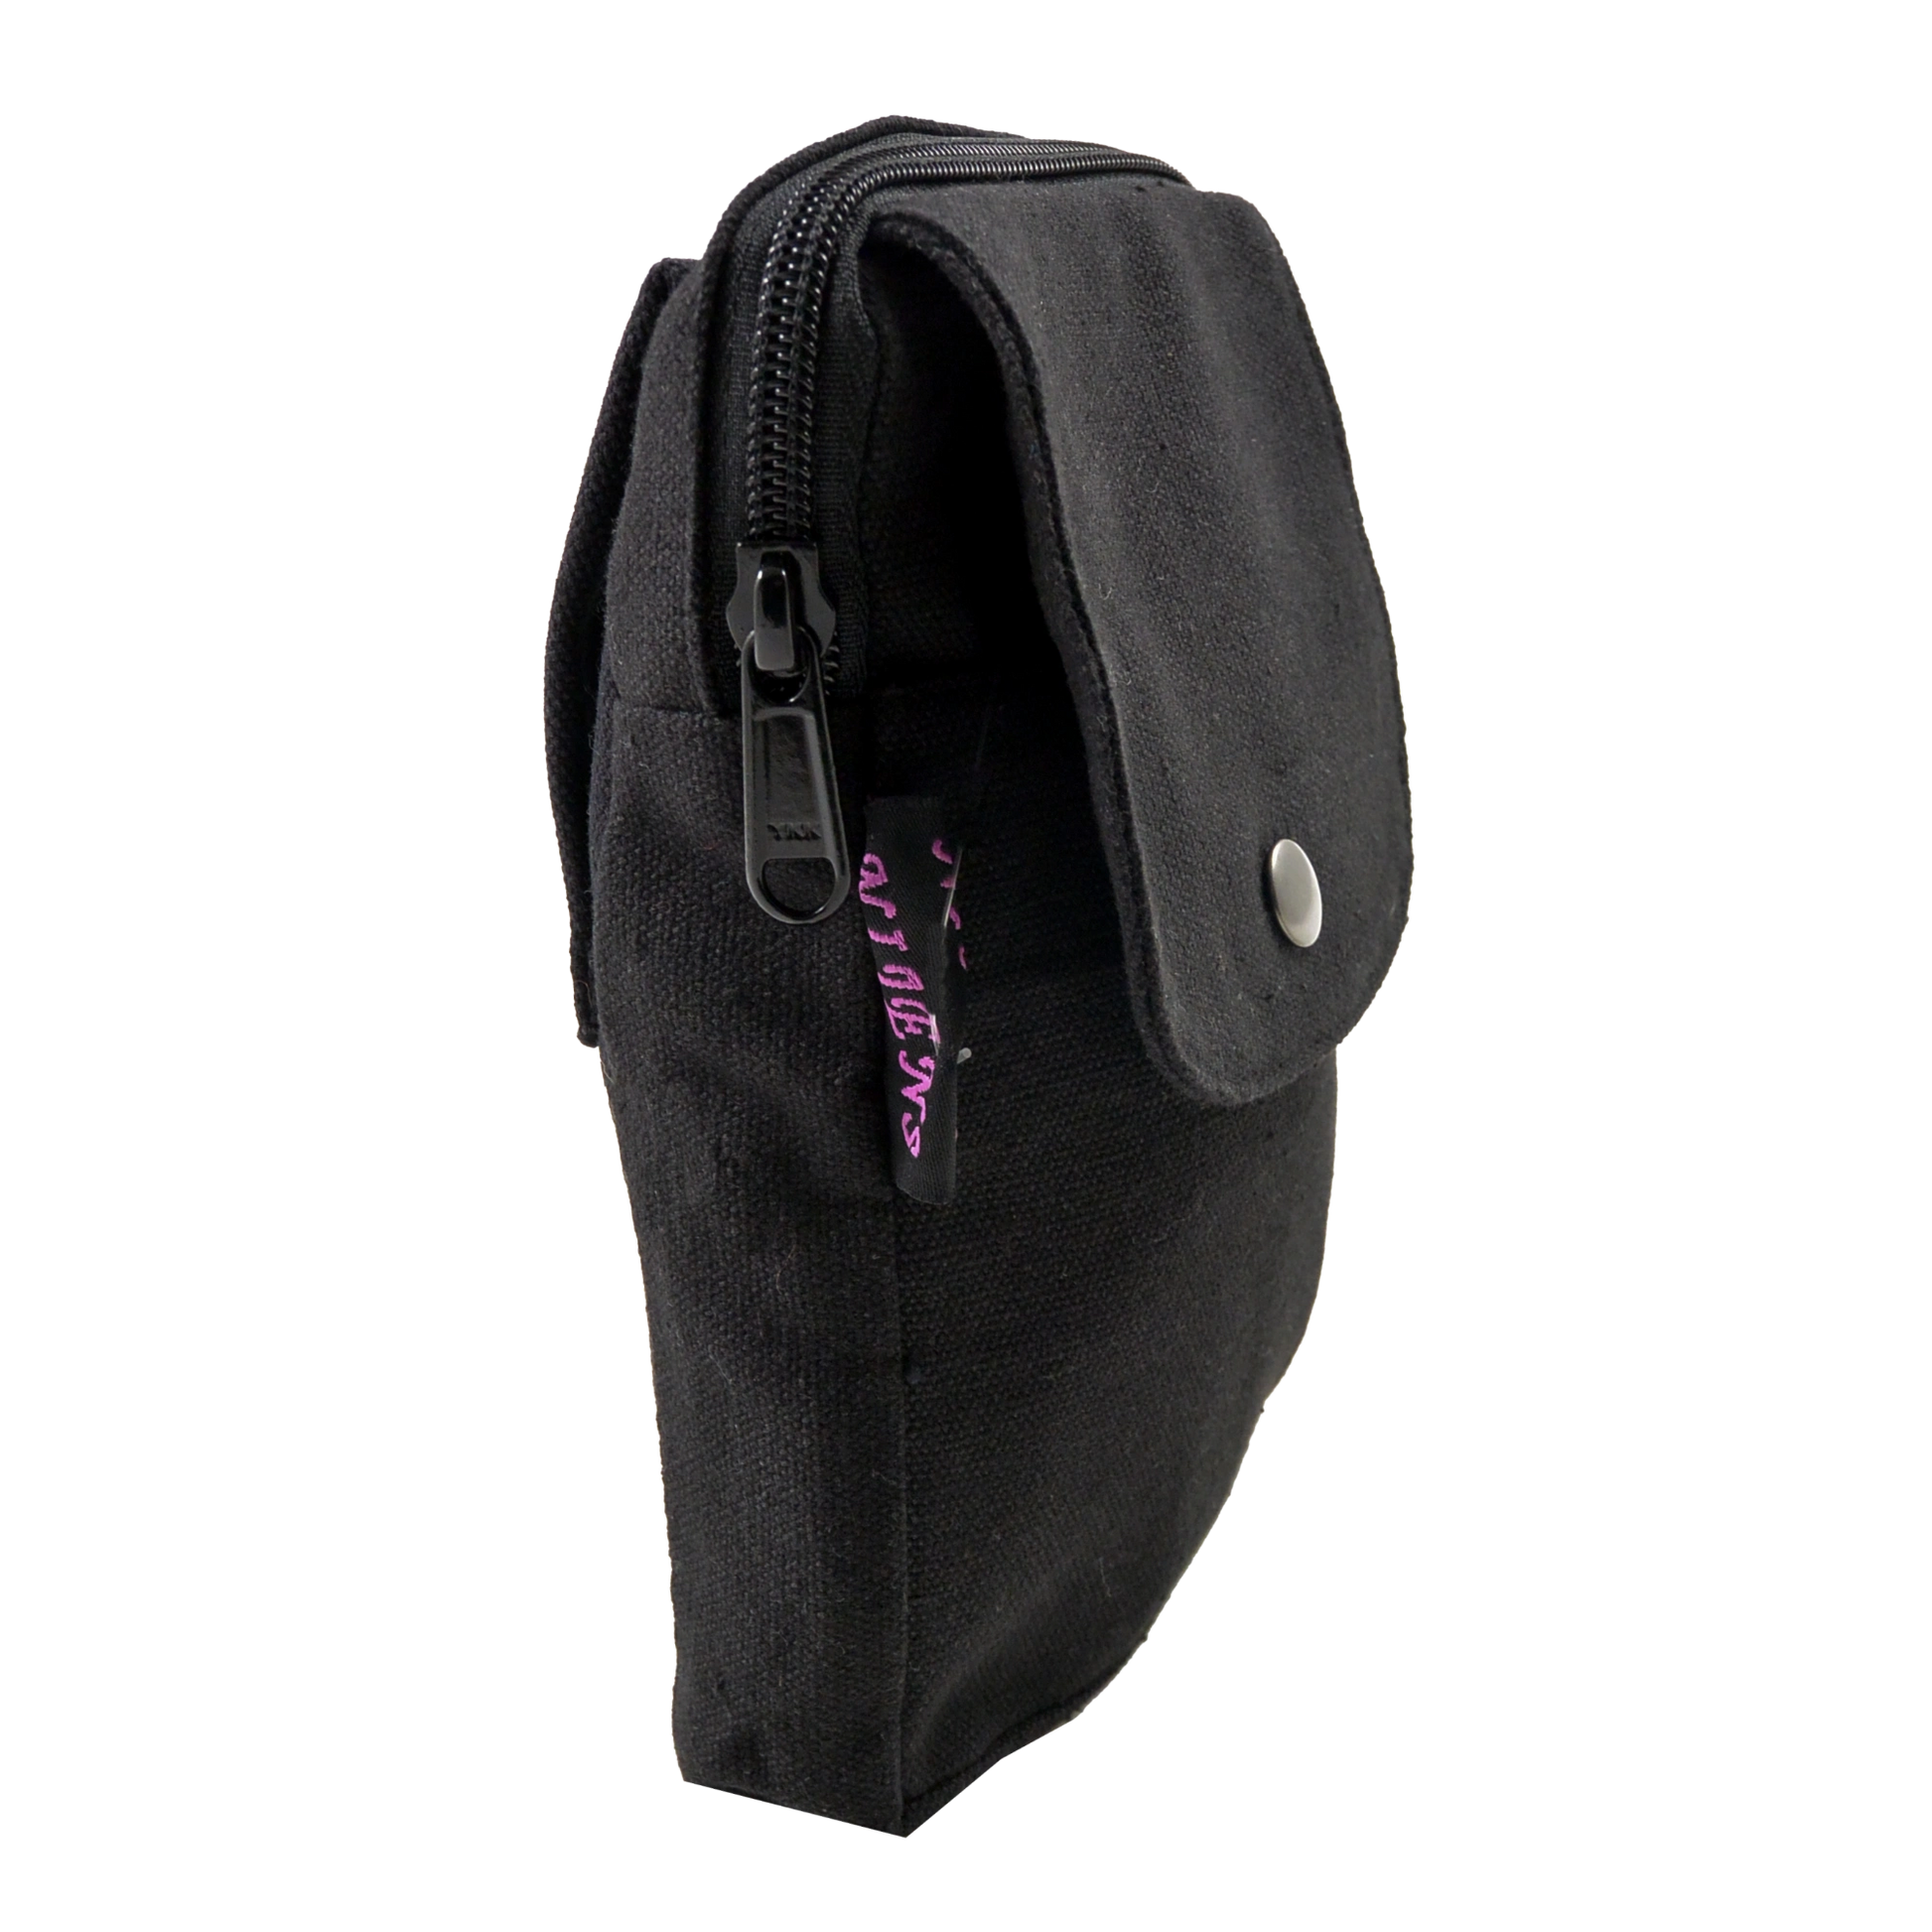 Beuteltasche schwarz mit zwei Gürtelschlaufen zum Anbringen an Gürtel. Sie besitzt ein Hauptfach mit Reißverschluss und einem Einsteckfach vorne.